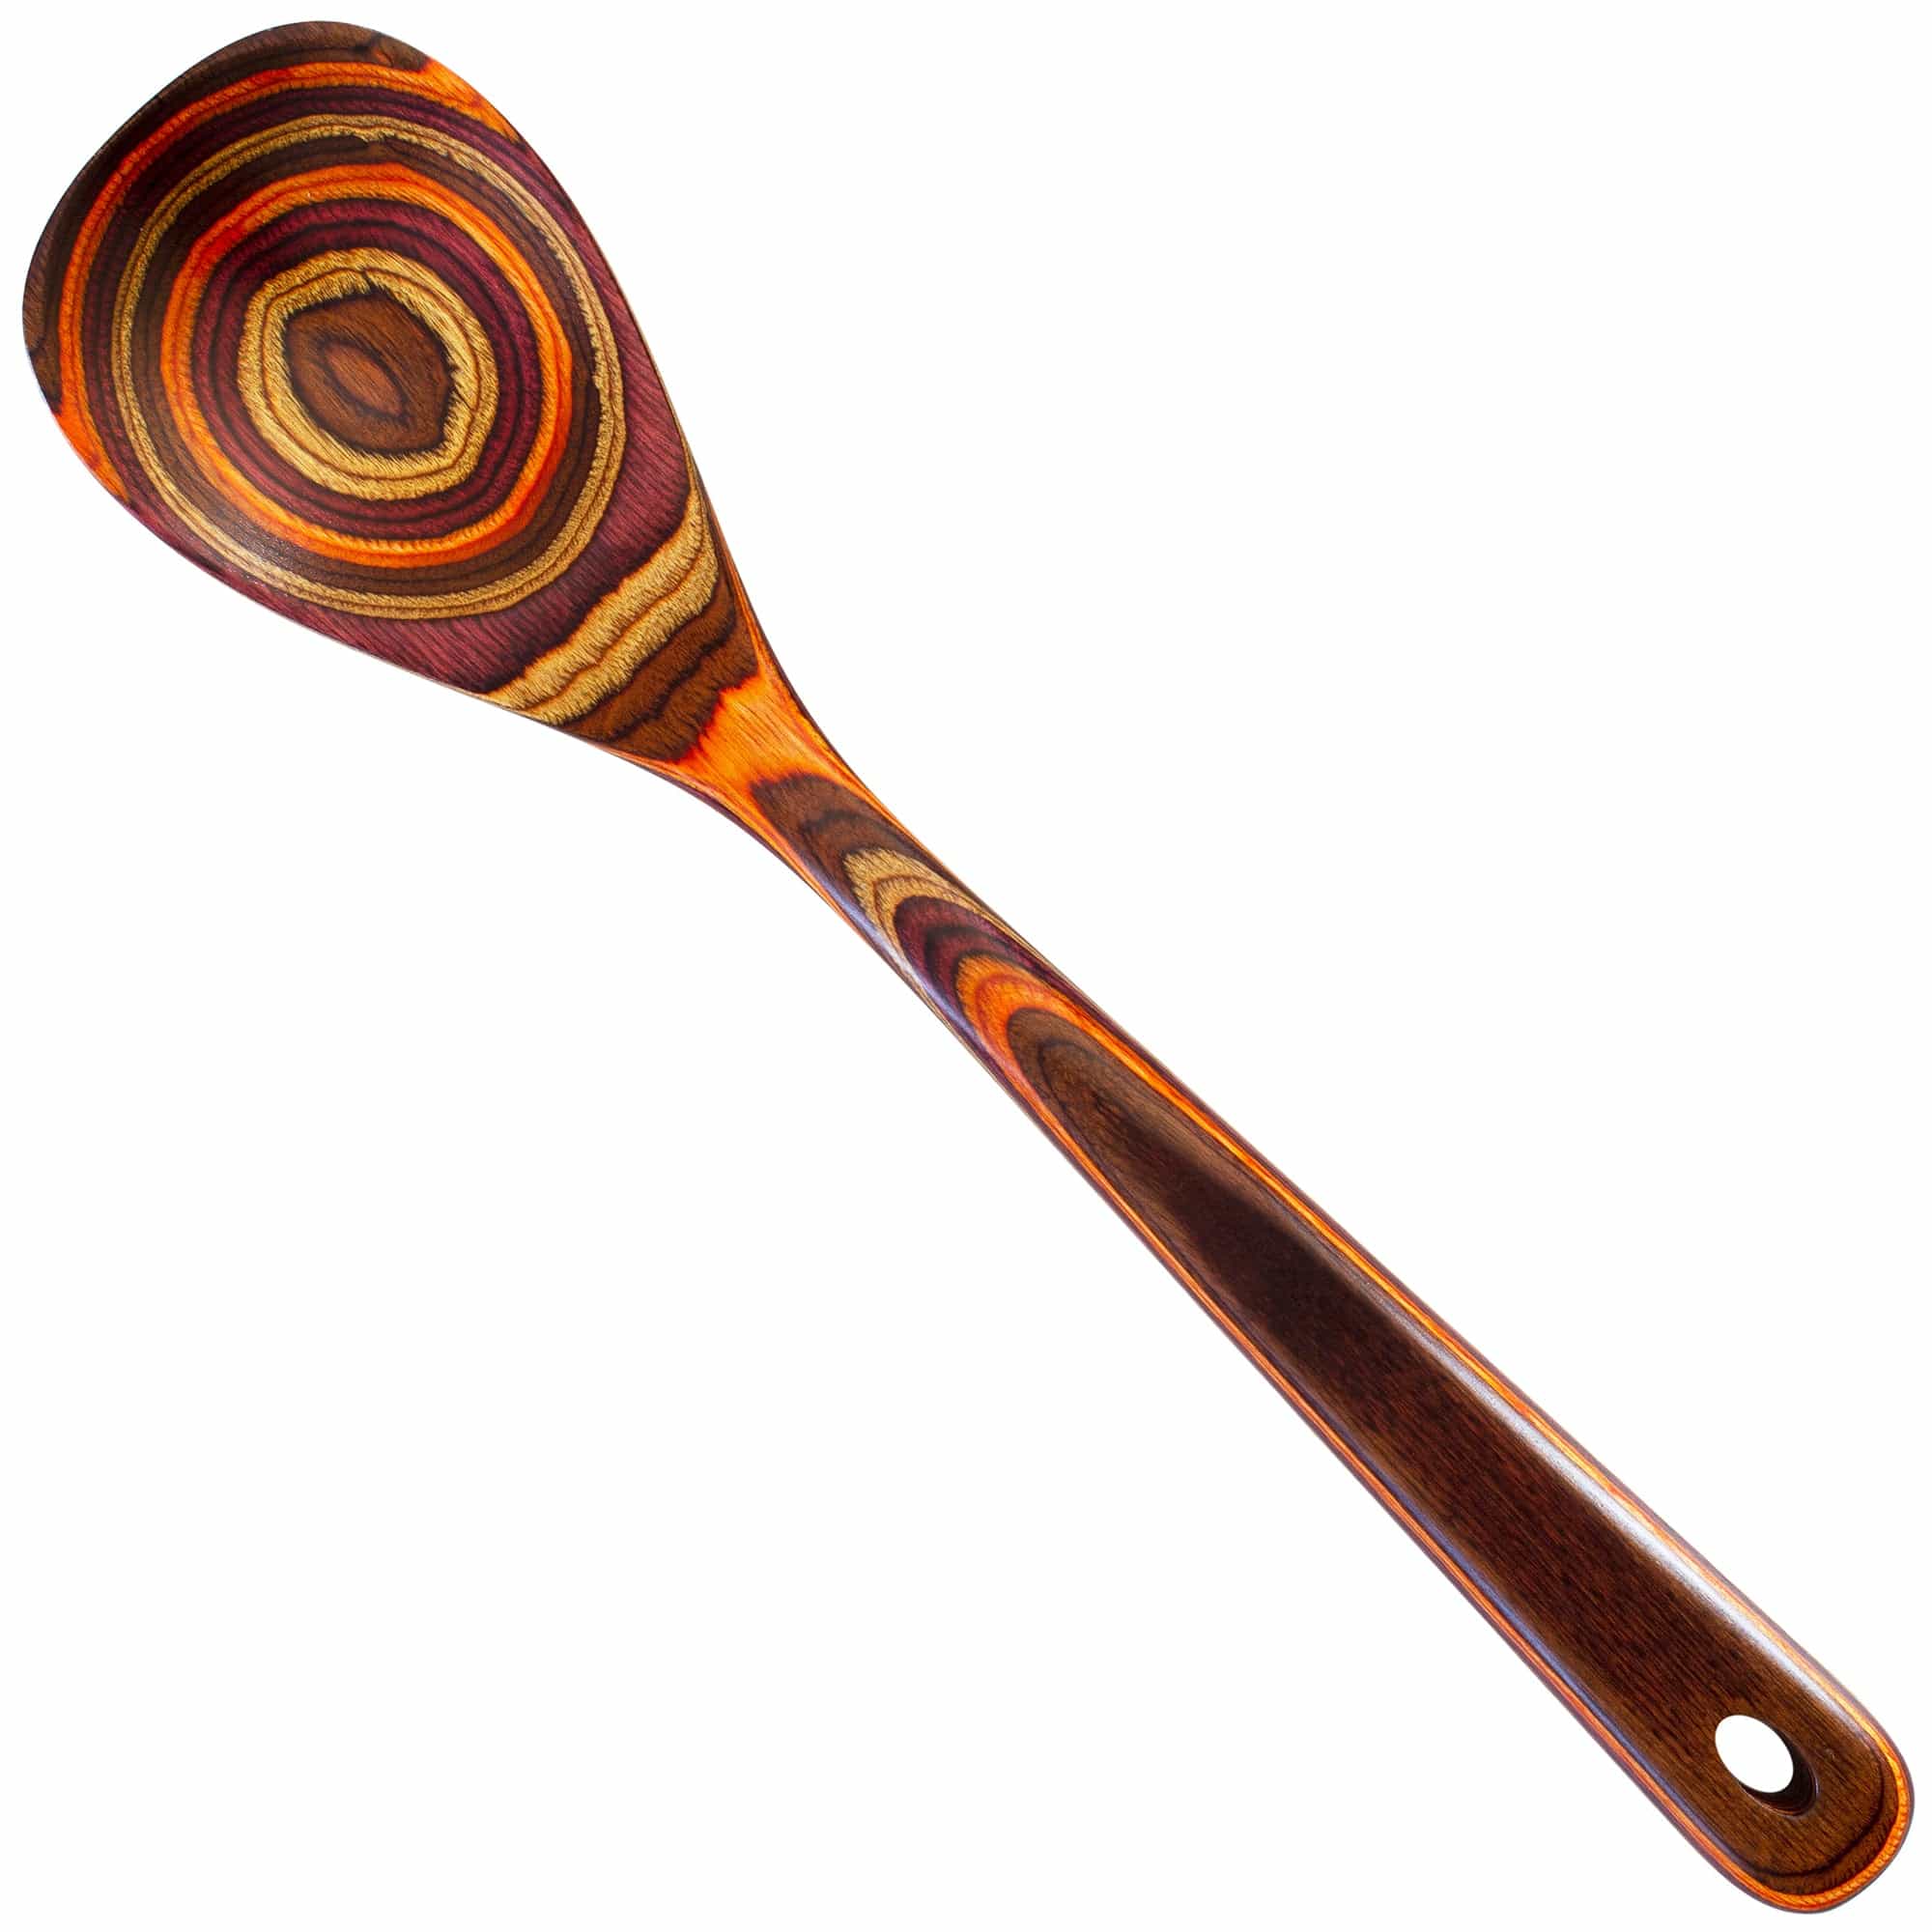 Totally Bamboo Baltique® Poconos Collection Cooking Spoon